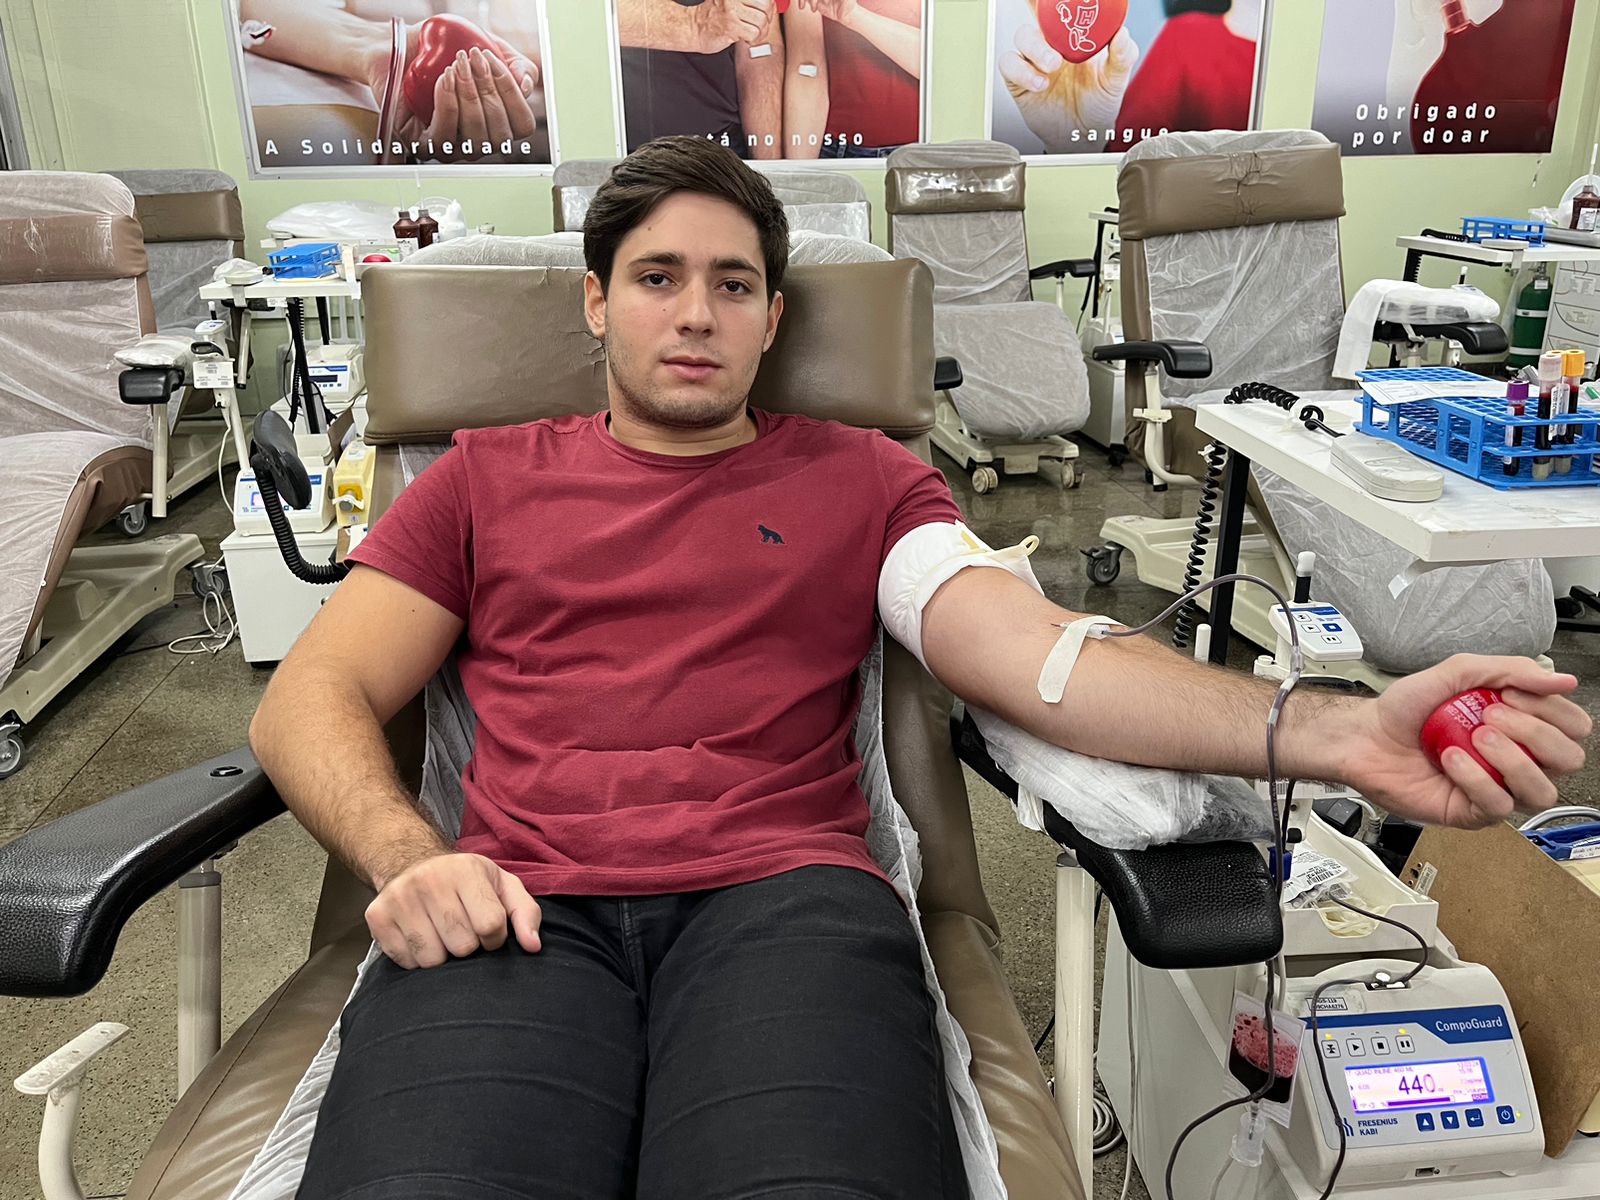 Semana santa: Hemoce sensibiliza população para doação de sangue